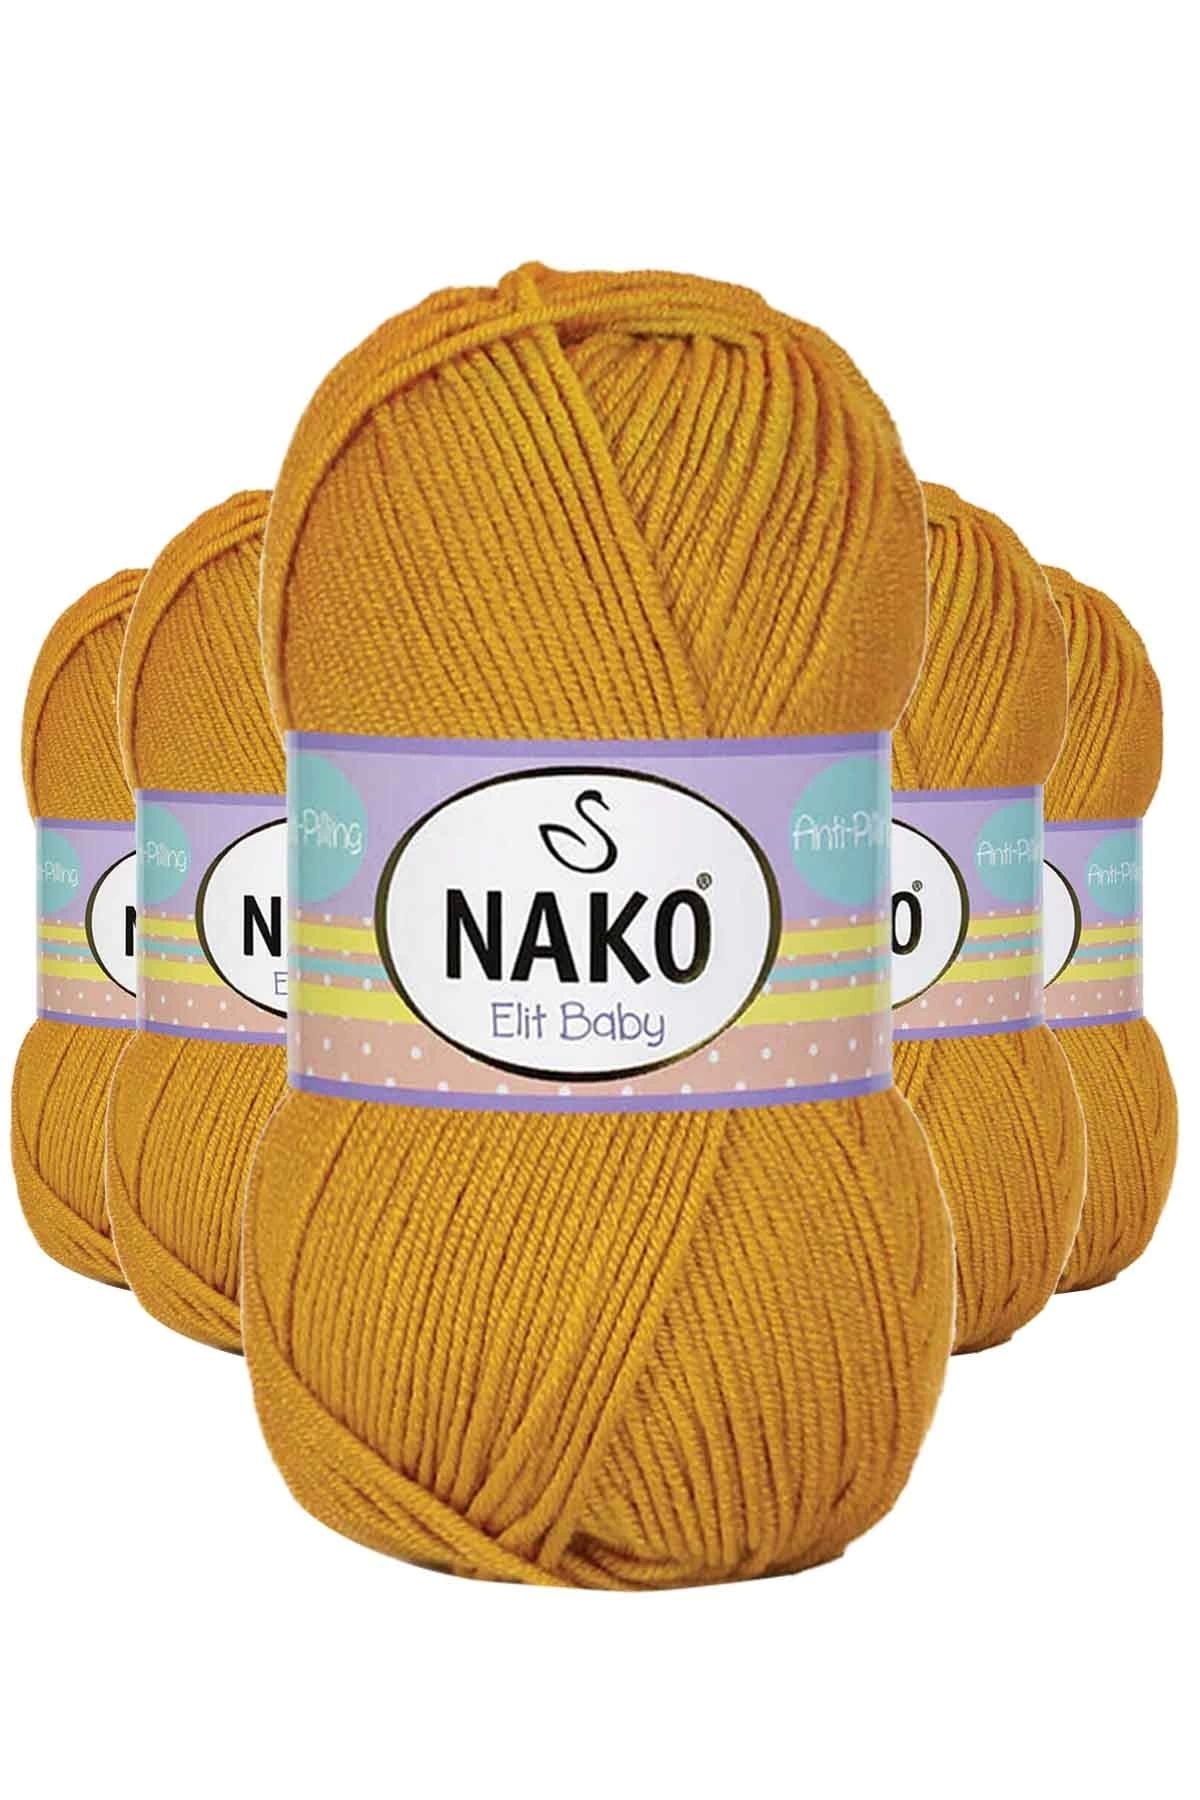 Nako 5 Adet Elite Baby El Örgü İpi Tüylenmeyen Bebek Yünü Parlak Altın 1636